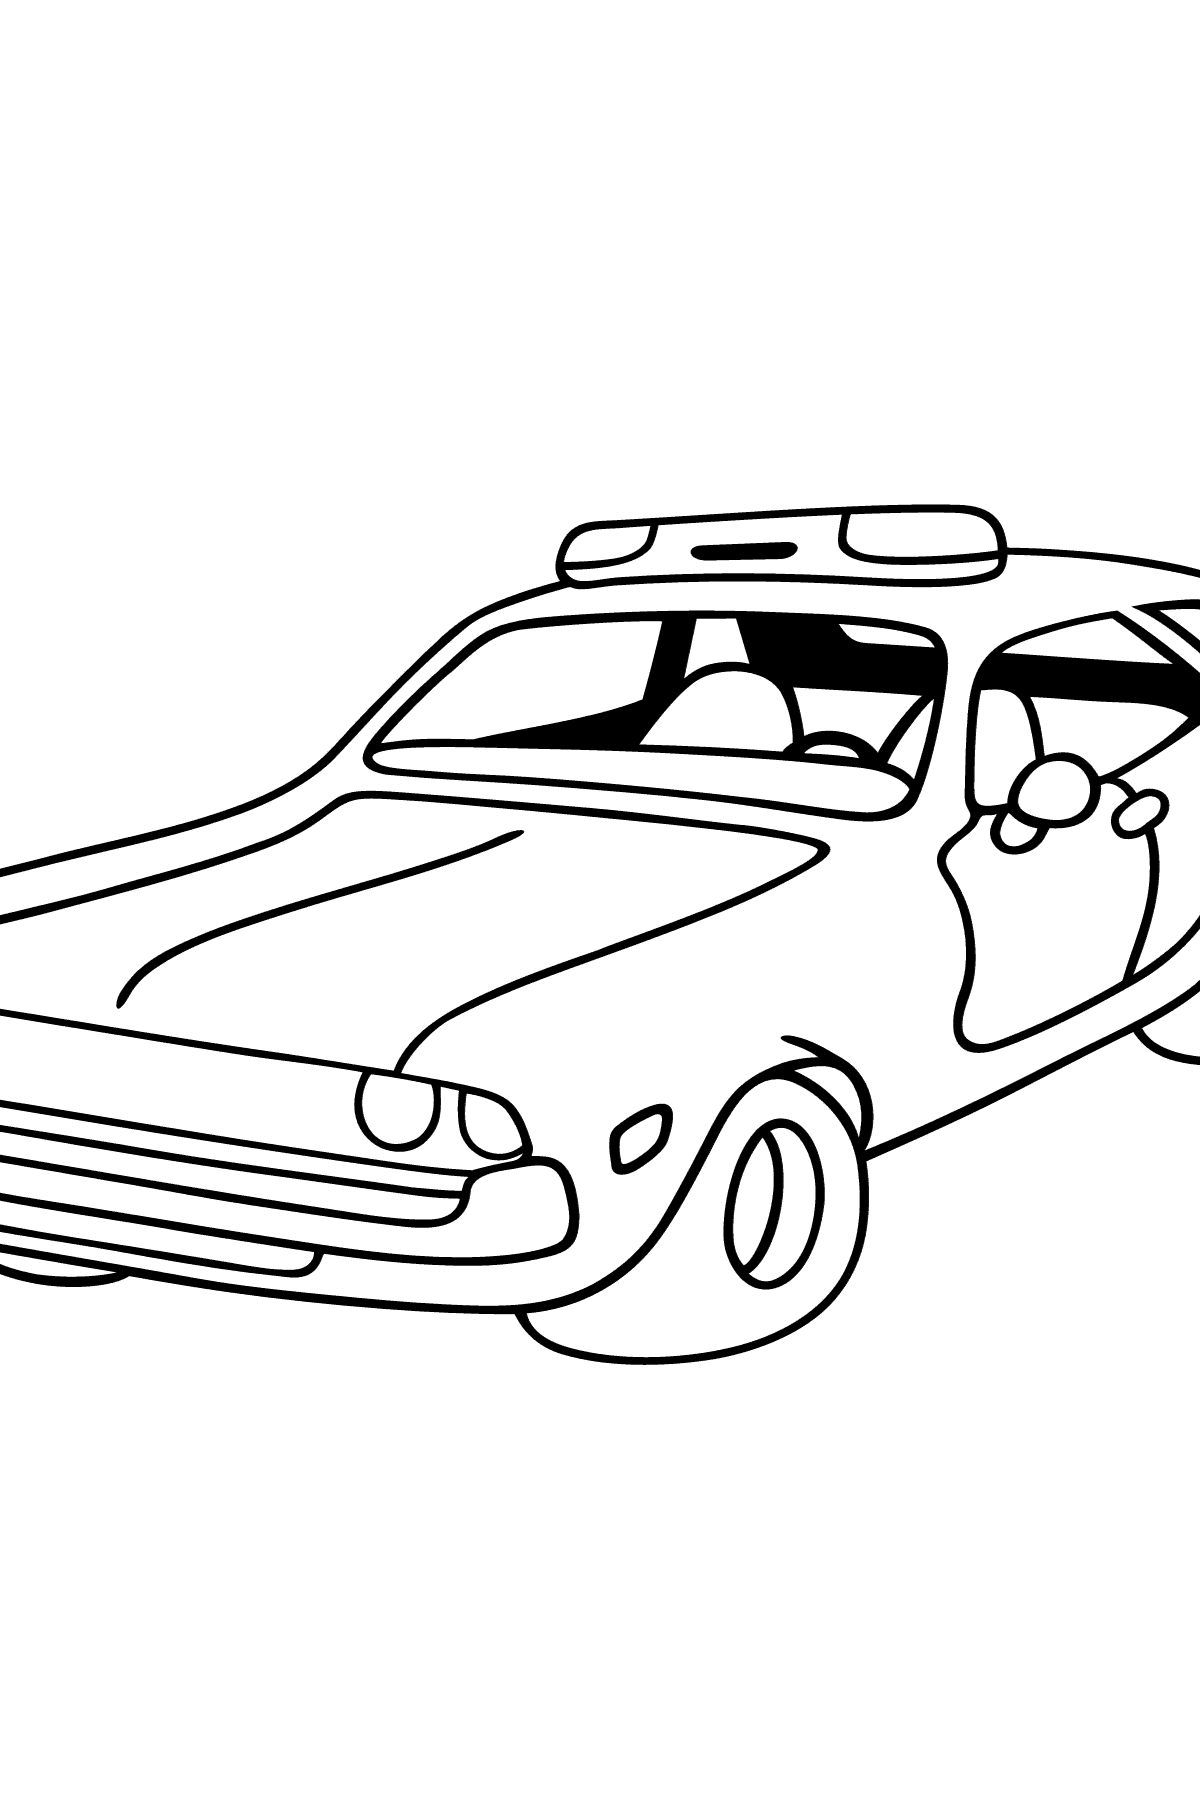 Kolorowanka - czerwono-biały samochód policyjny - Kolorowanki dla dzieci